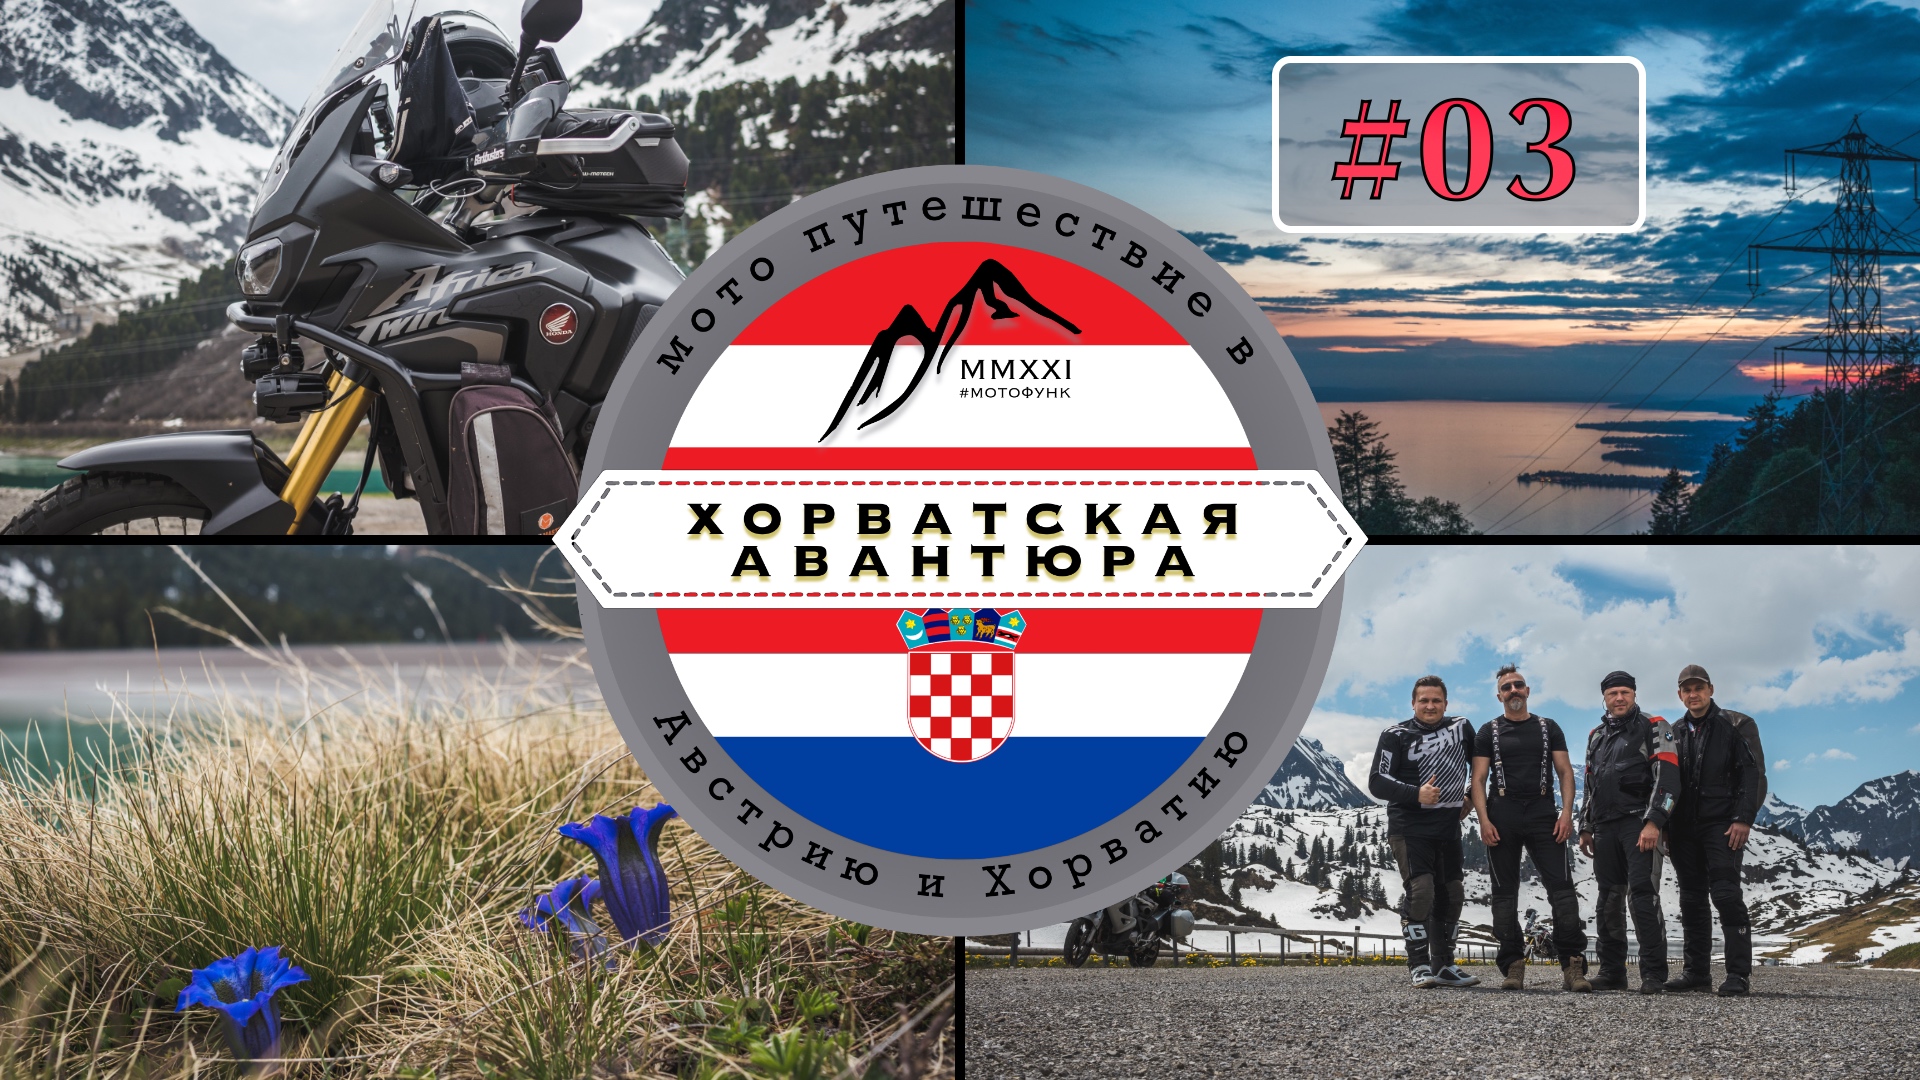 ⓪③ Хорватская авантюра. От перевала к перевалу. Мото путешествие в Австрию и в Хорватию #CRF1000L